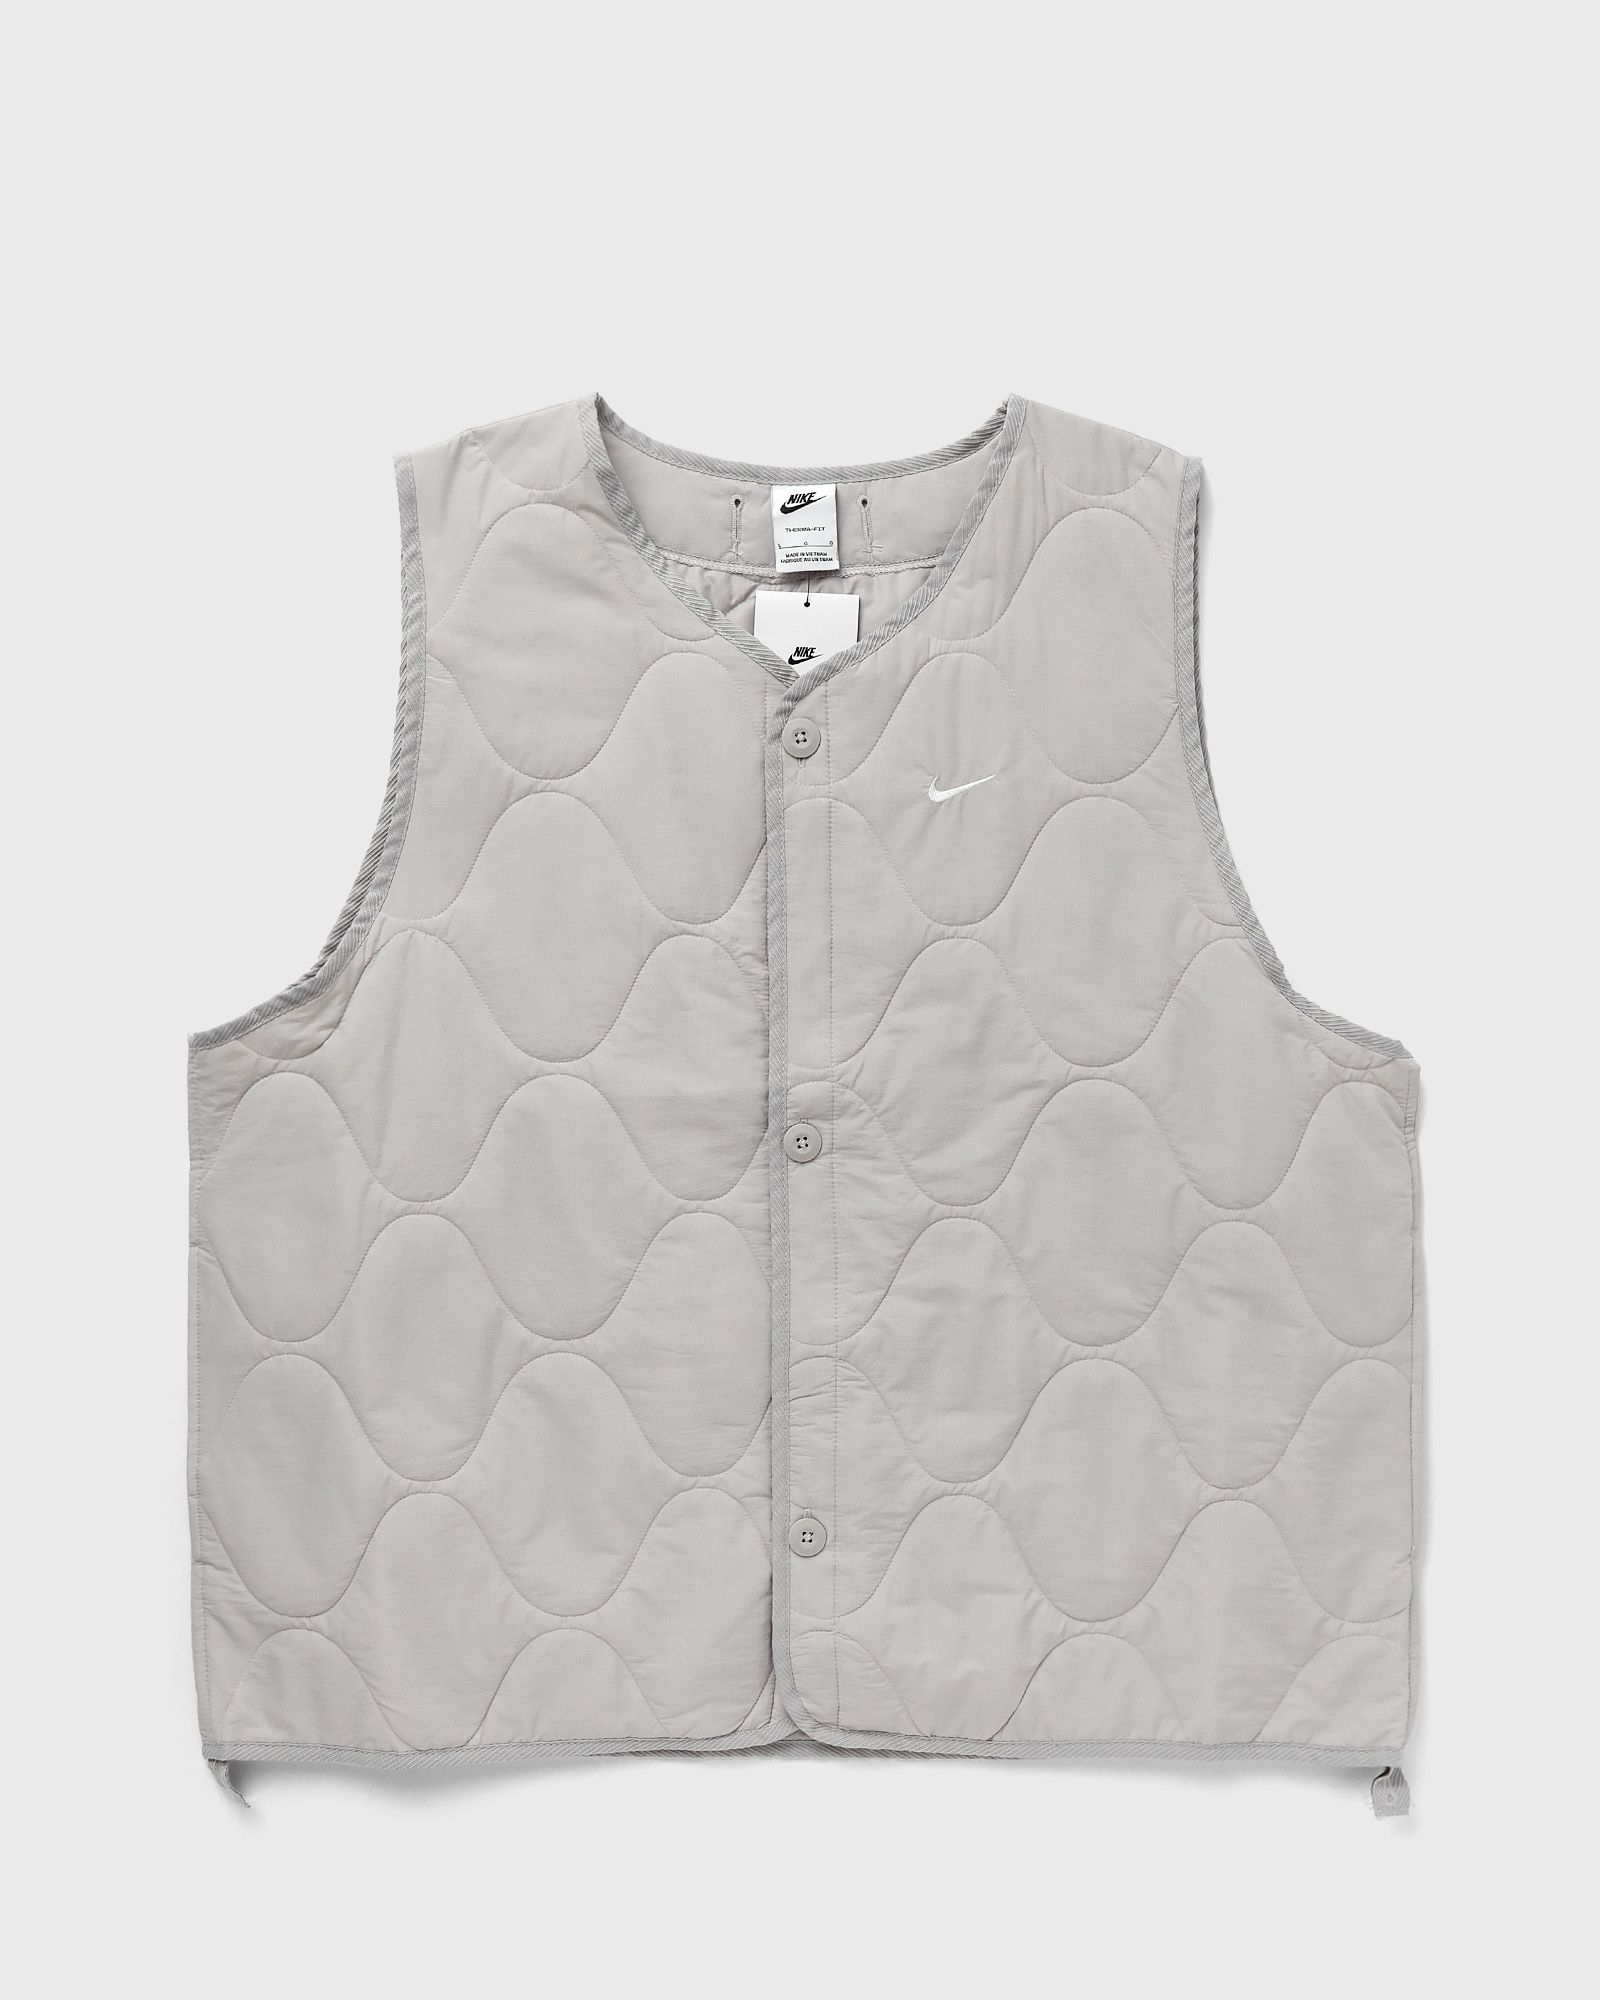 Nike - life woven military liner vest men vests grey in größe:xxl